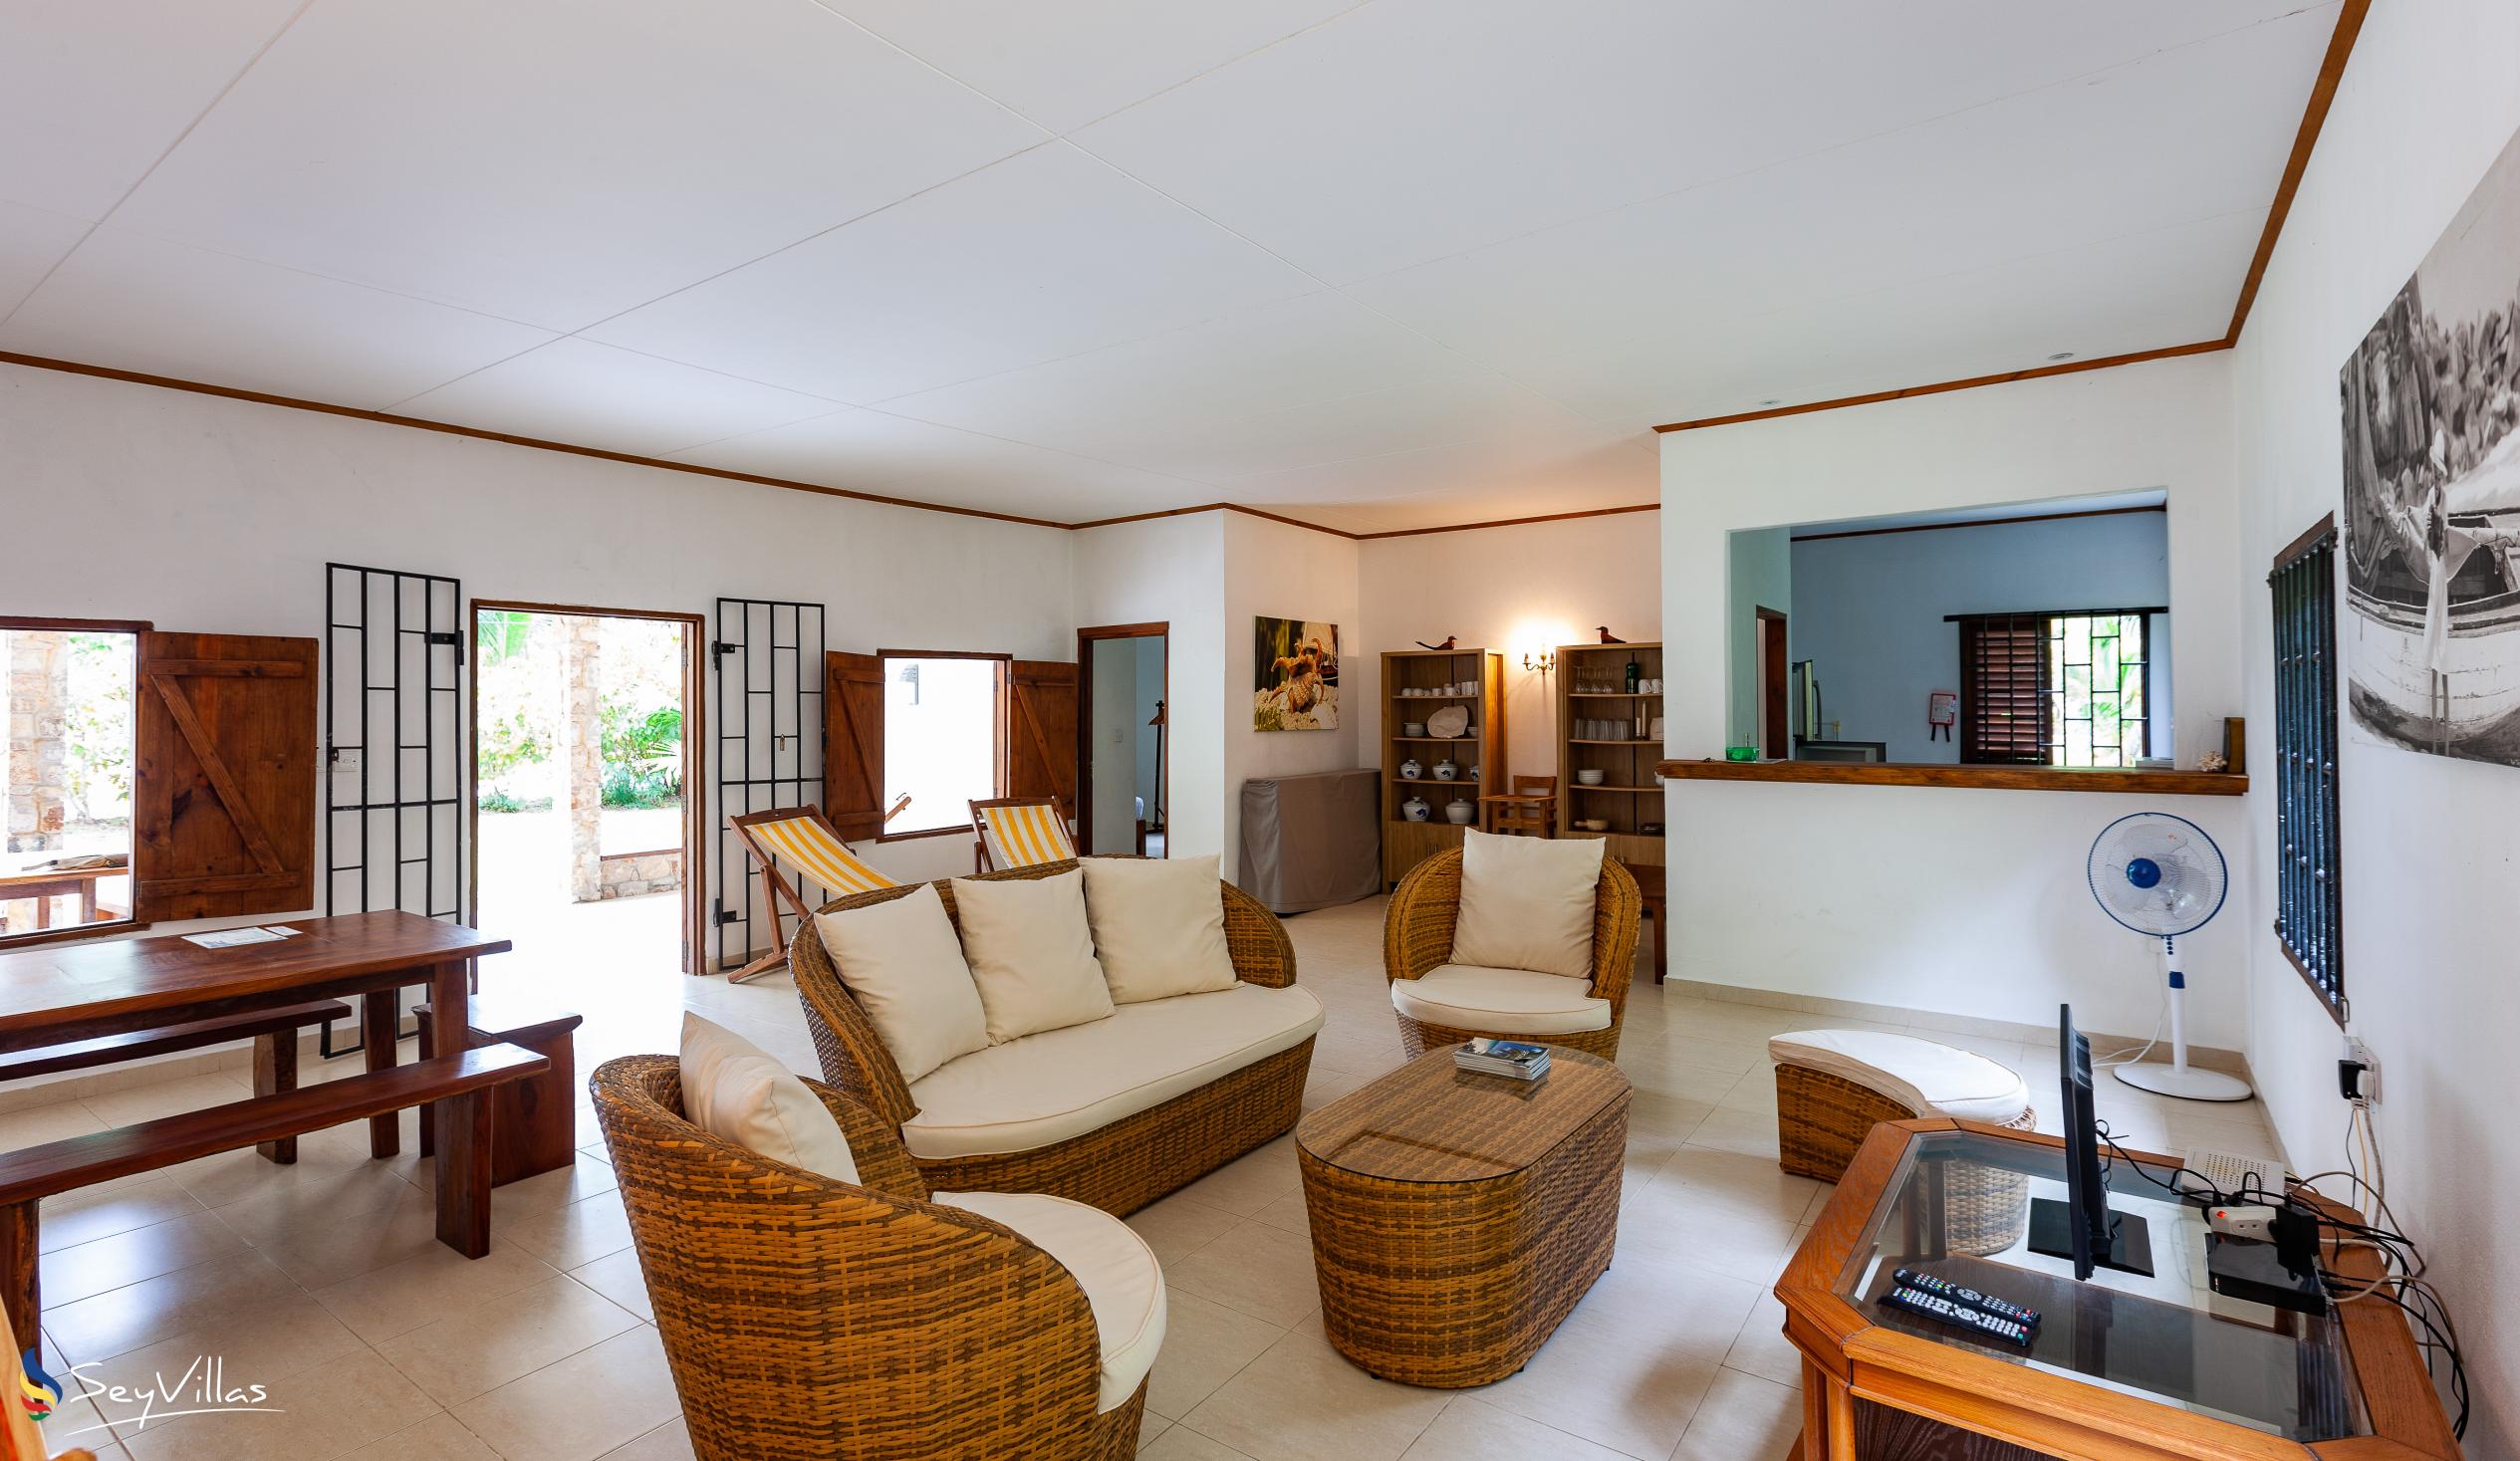 Foto 8: Villa Zananas - Innenbereich - Praslin (Seychellen)